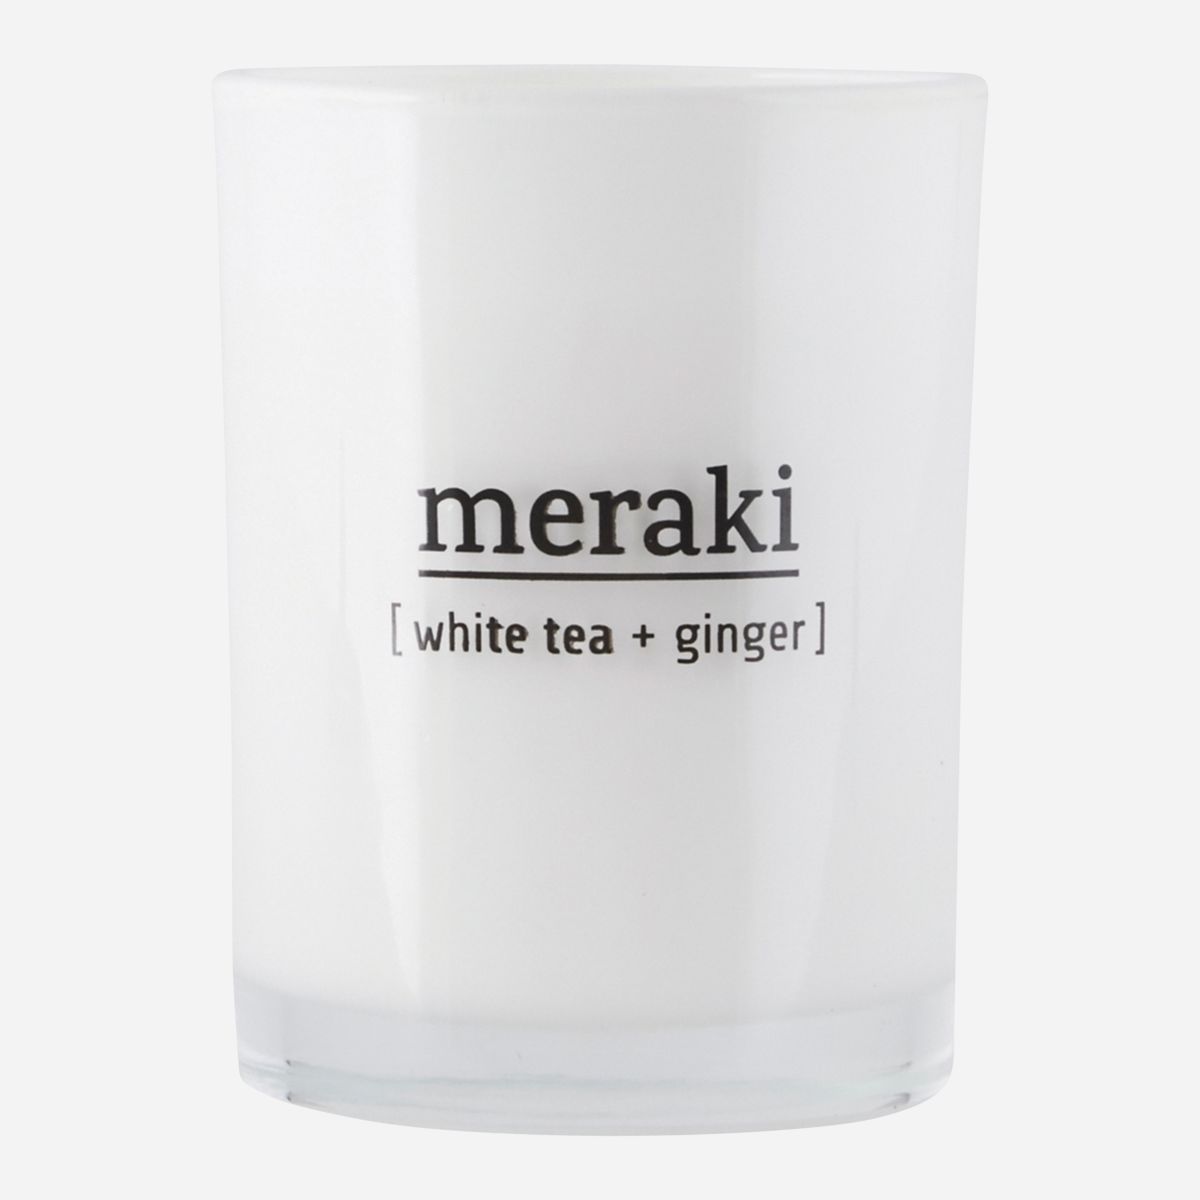 Meraki duftlys 35t white tea+ginger